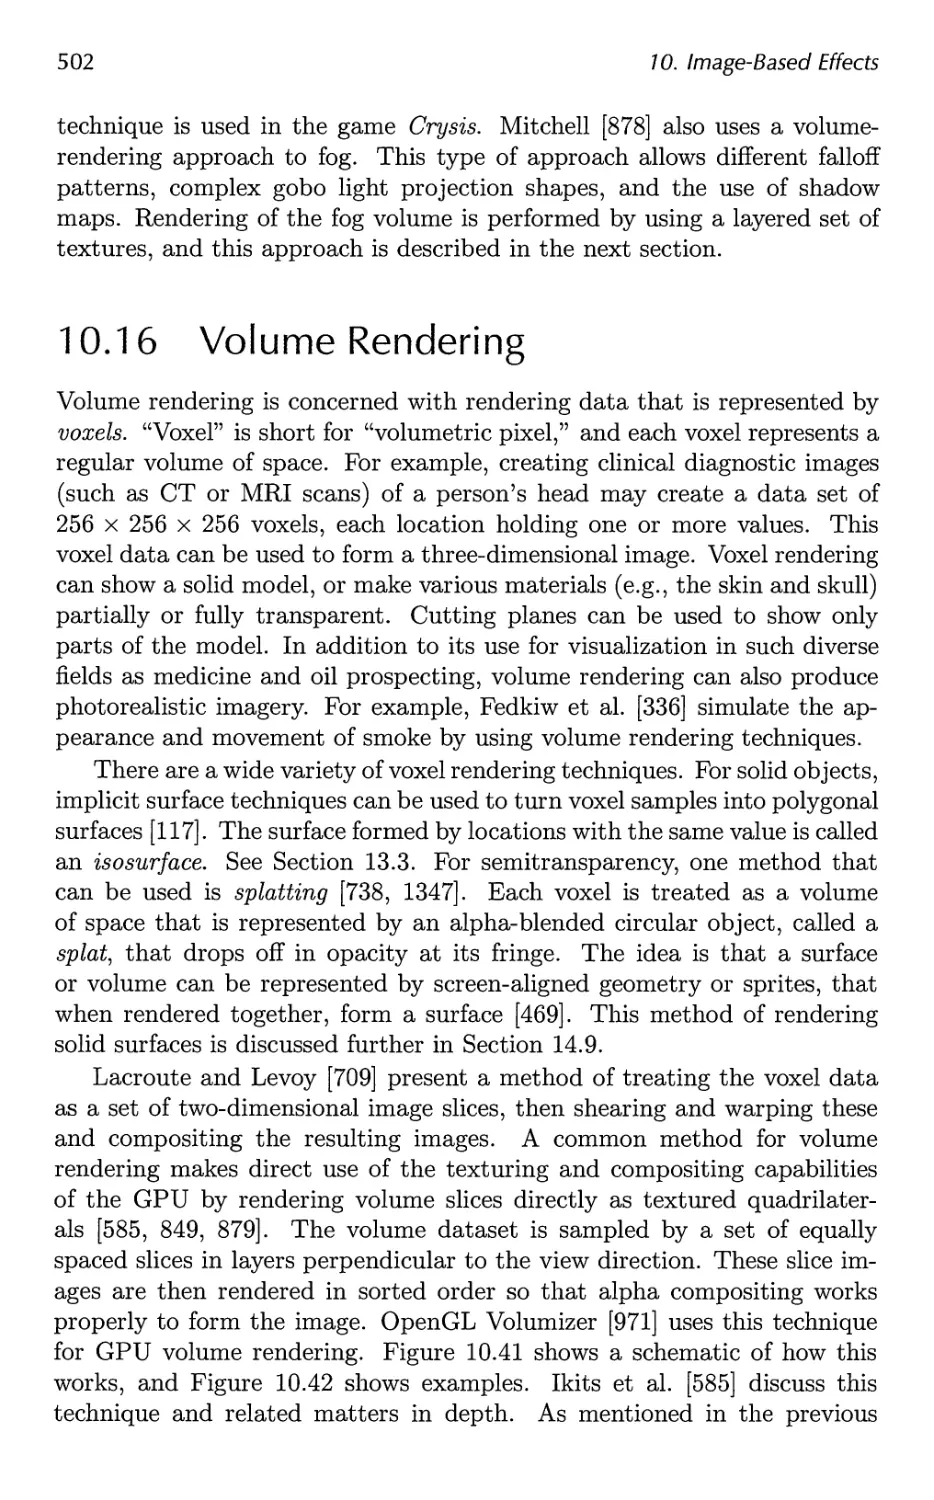 10.16 Volume Rendering